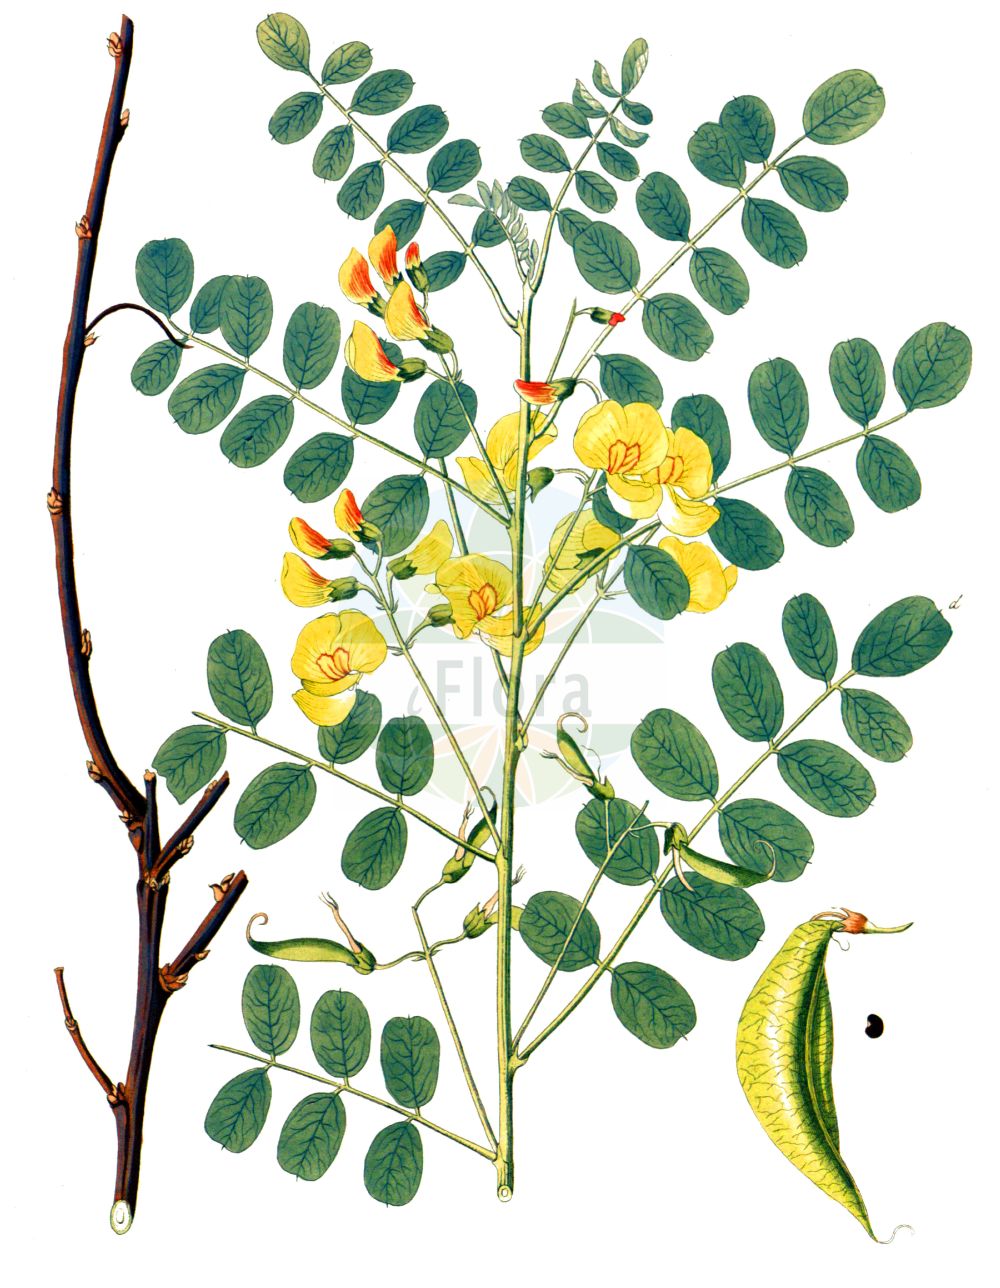 Historische Abbildung von Colutea arborescens (Gelber Blasenstrauch - Bladder-senna). Das Bild zeigt Blatt, Bluete, Frucht und Same. ---- Historical Drawing of Colutea arborescens (Gelber Blasenstrauch - Bladder-senna). The image is showing leaf, flower, fruit and seed.(Colutea arborescens,Gelber Blasenstrauch,Bladder-senna,Colutea arborescens,Gelber Blasenstrauch,Blasenstrauch,Gewoehnlicher Blasenstrauch,Bladder-senna,Bastard Senna,Common Bladder Senna,Colutea,Blasenstrauch,Fabaceae,Schmetterlingsblütler,Pea family,Blatt,Bluete,Frucht,Same,leaf,flower,fruit,seed,Krauss (1802f))